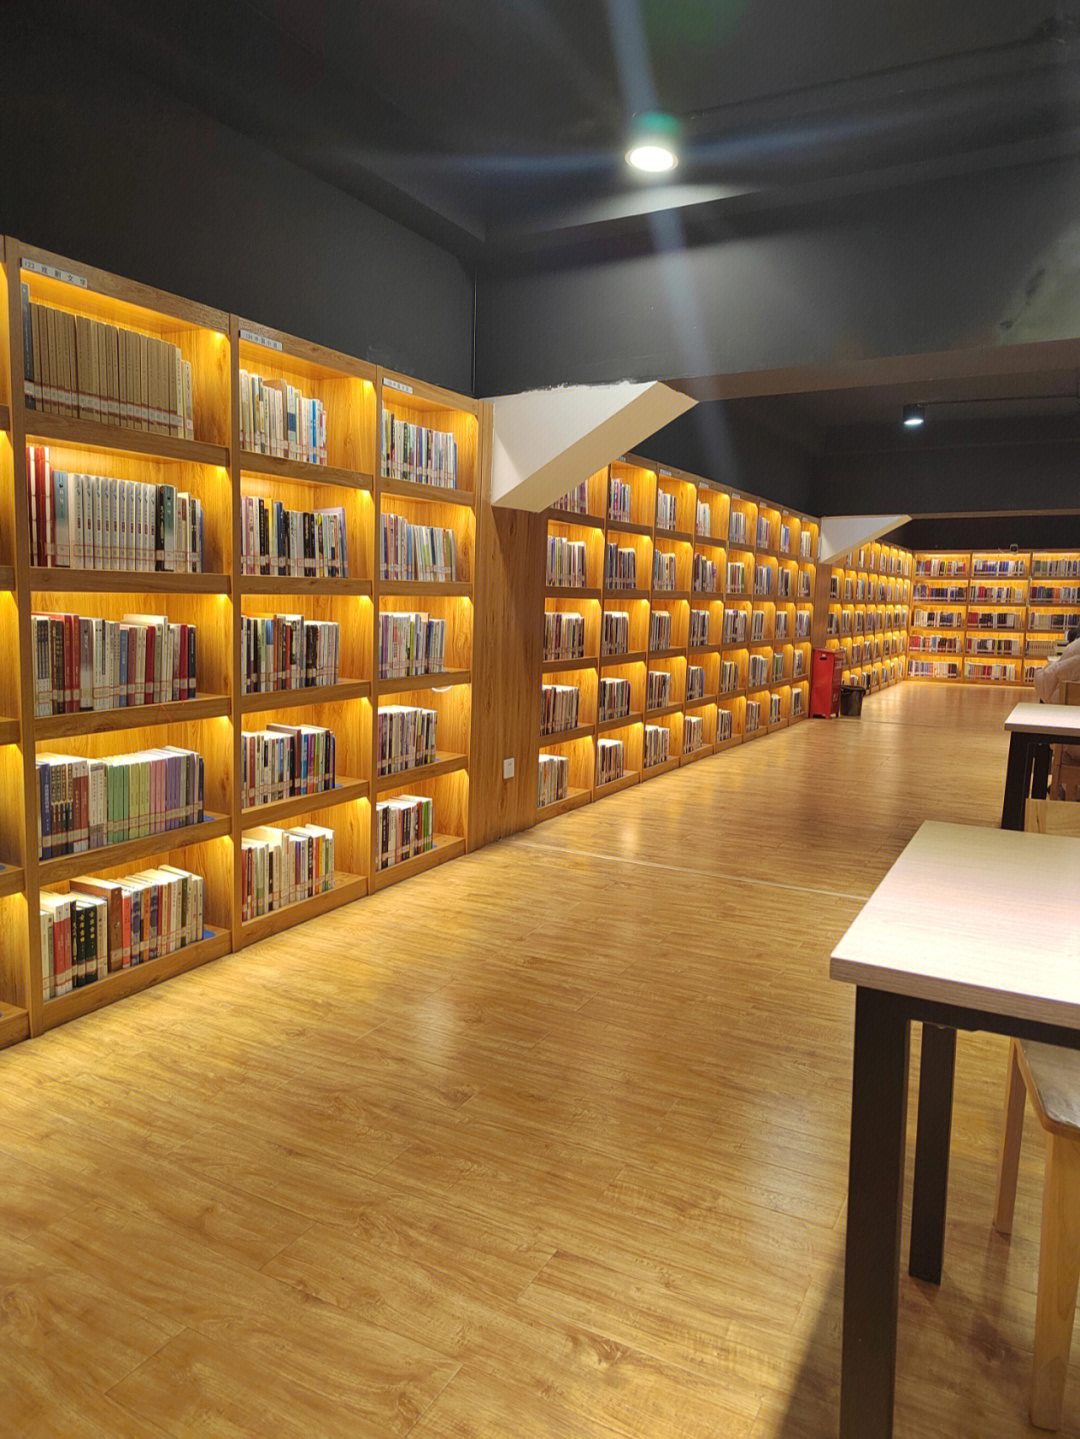 在乐山市图书馆重修后第一次来,体验感非常棒!